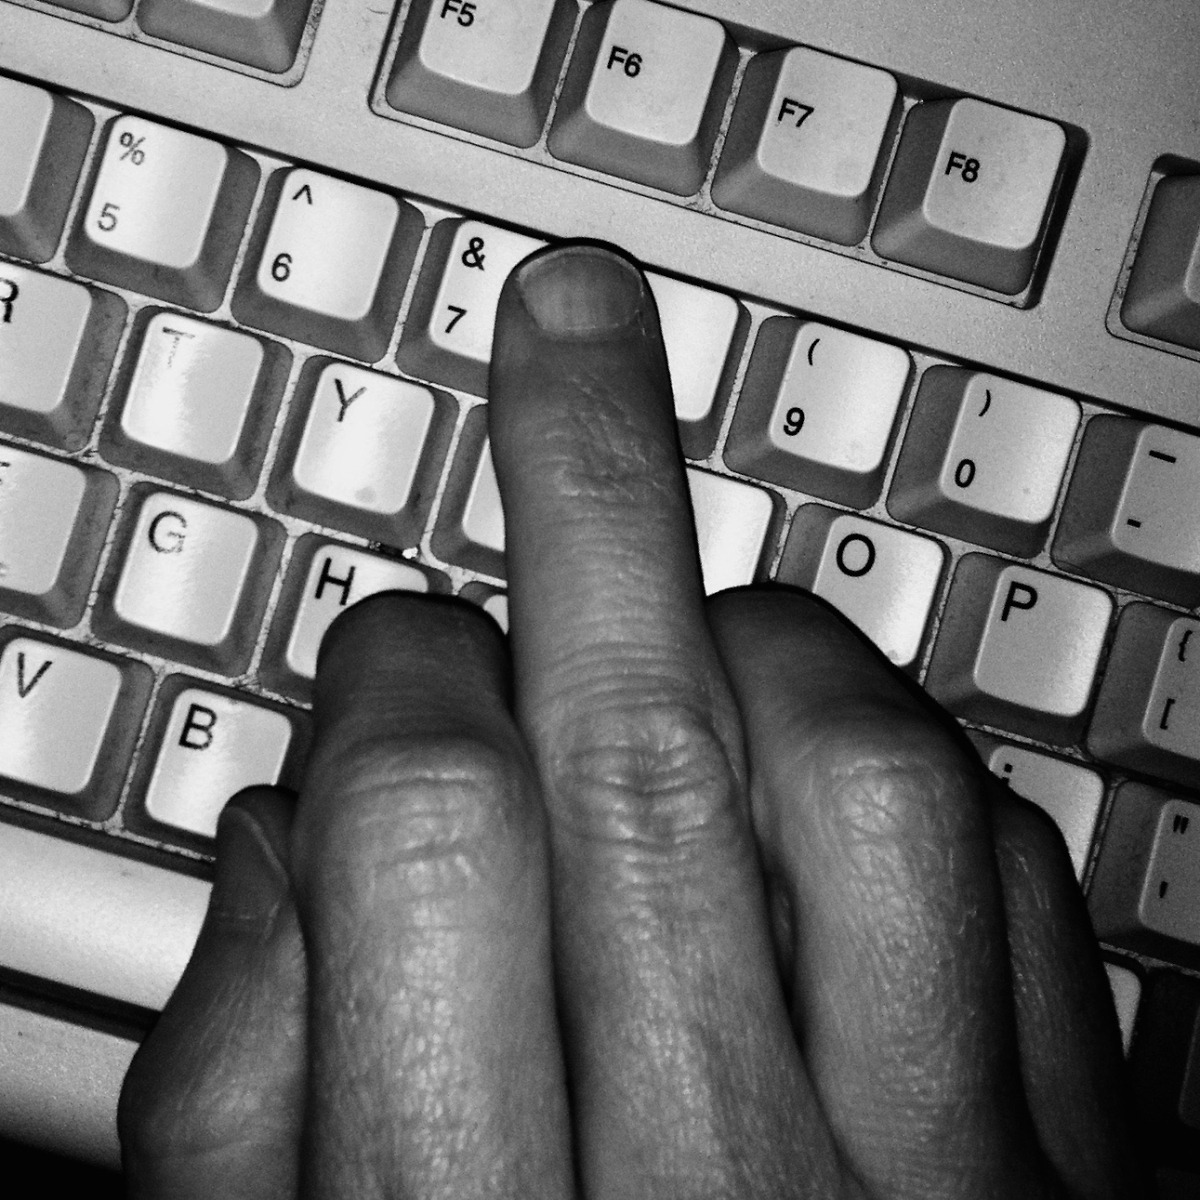 Пальцы на клавиатуре